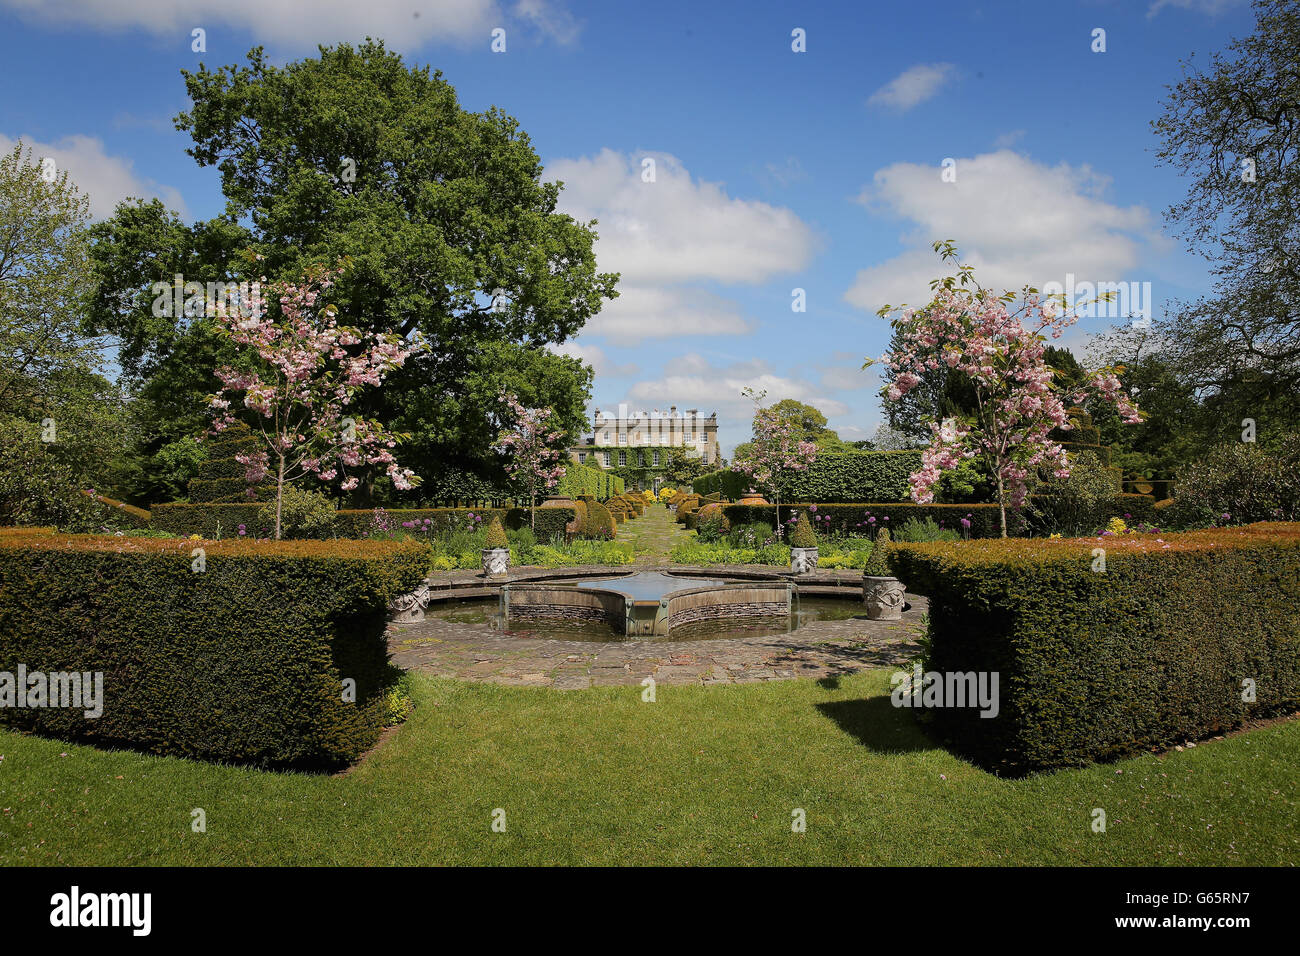 Vista generale dei giardini di Highgrove House al lancio della Coronation Meadows Initiative del Principe di Galles. Foto Stock